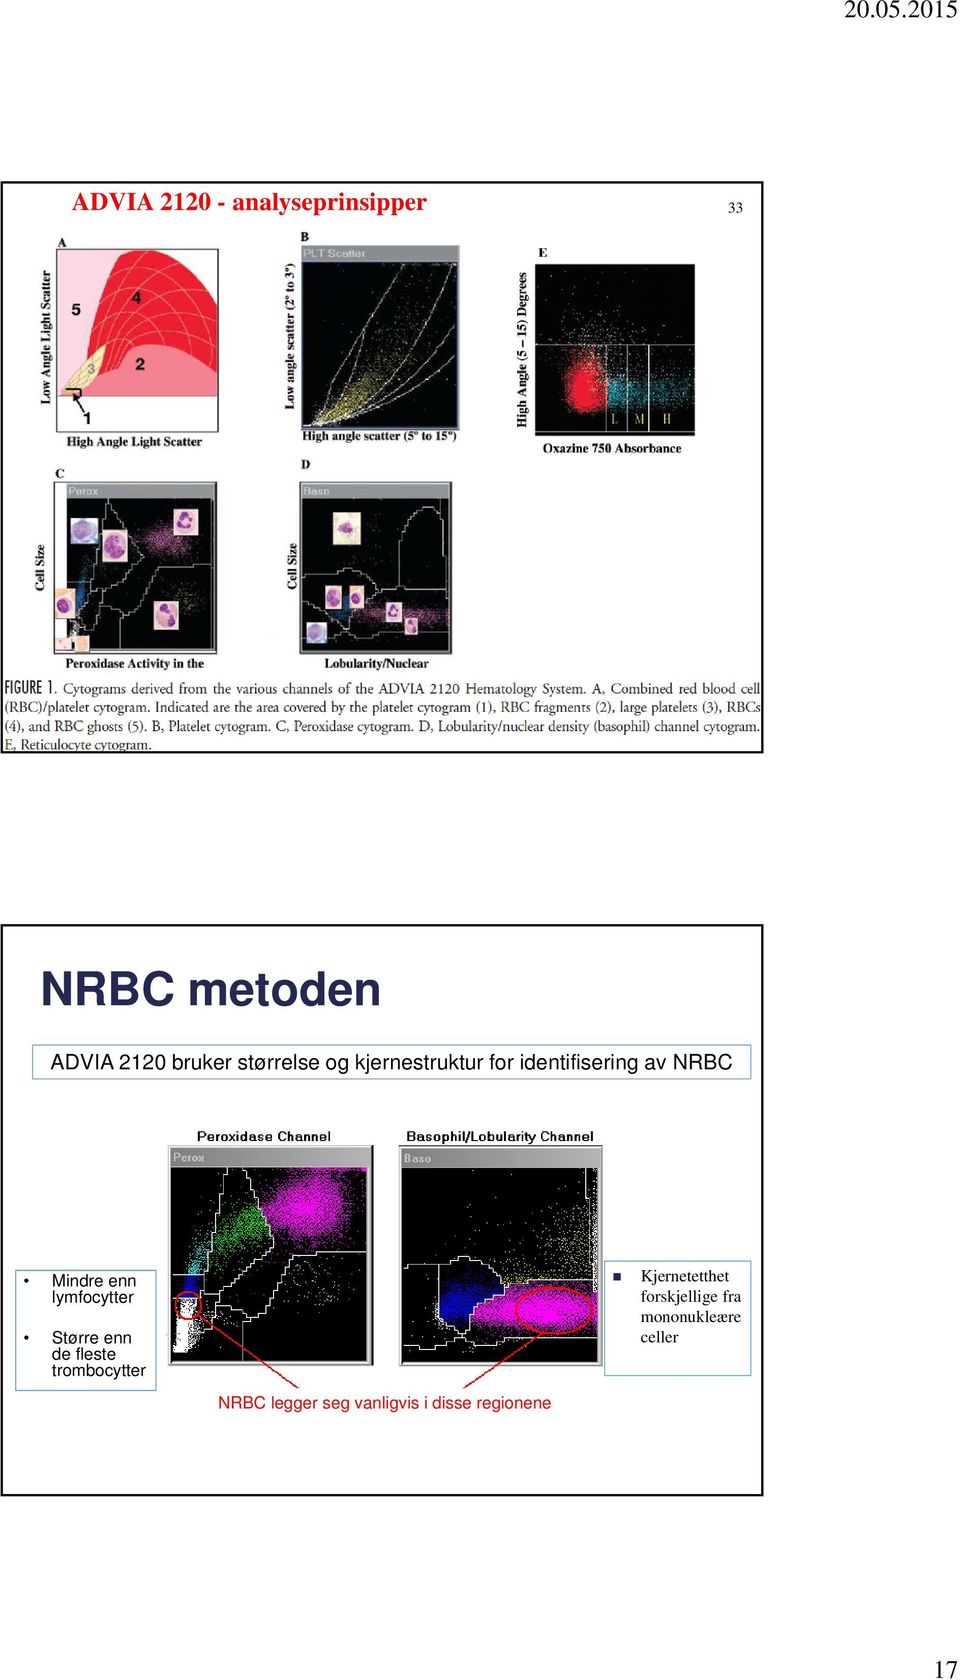 lymfocytter Større enn de fleste trombocytter NRBC legger seg